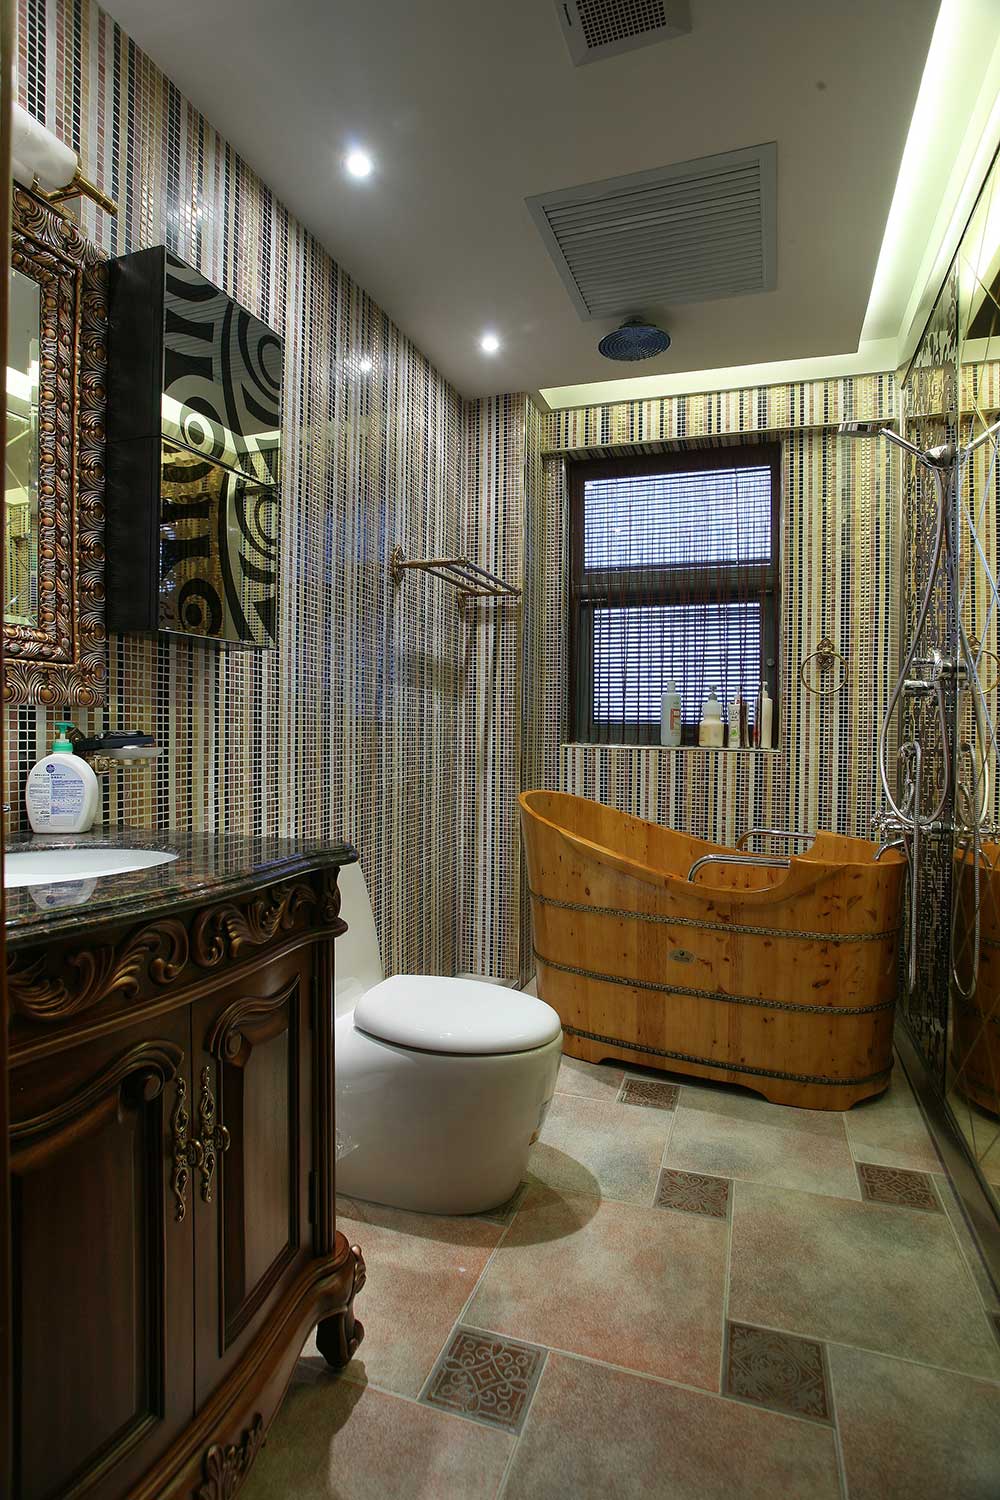 卫生间要防水，采用了大量的浅色地砖和花色墙砖，木桶代替了陶瓷的浴缸，与整个套房的风格相呼应。